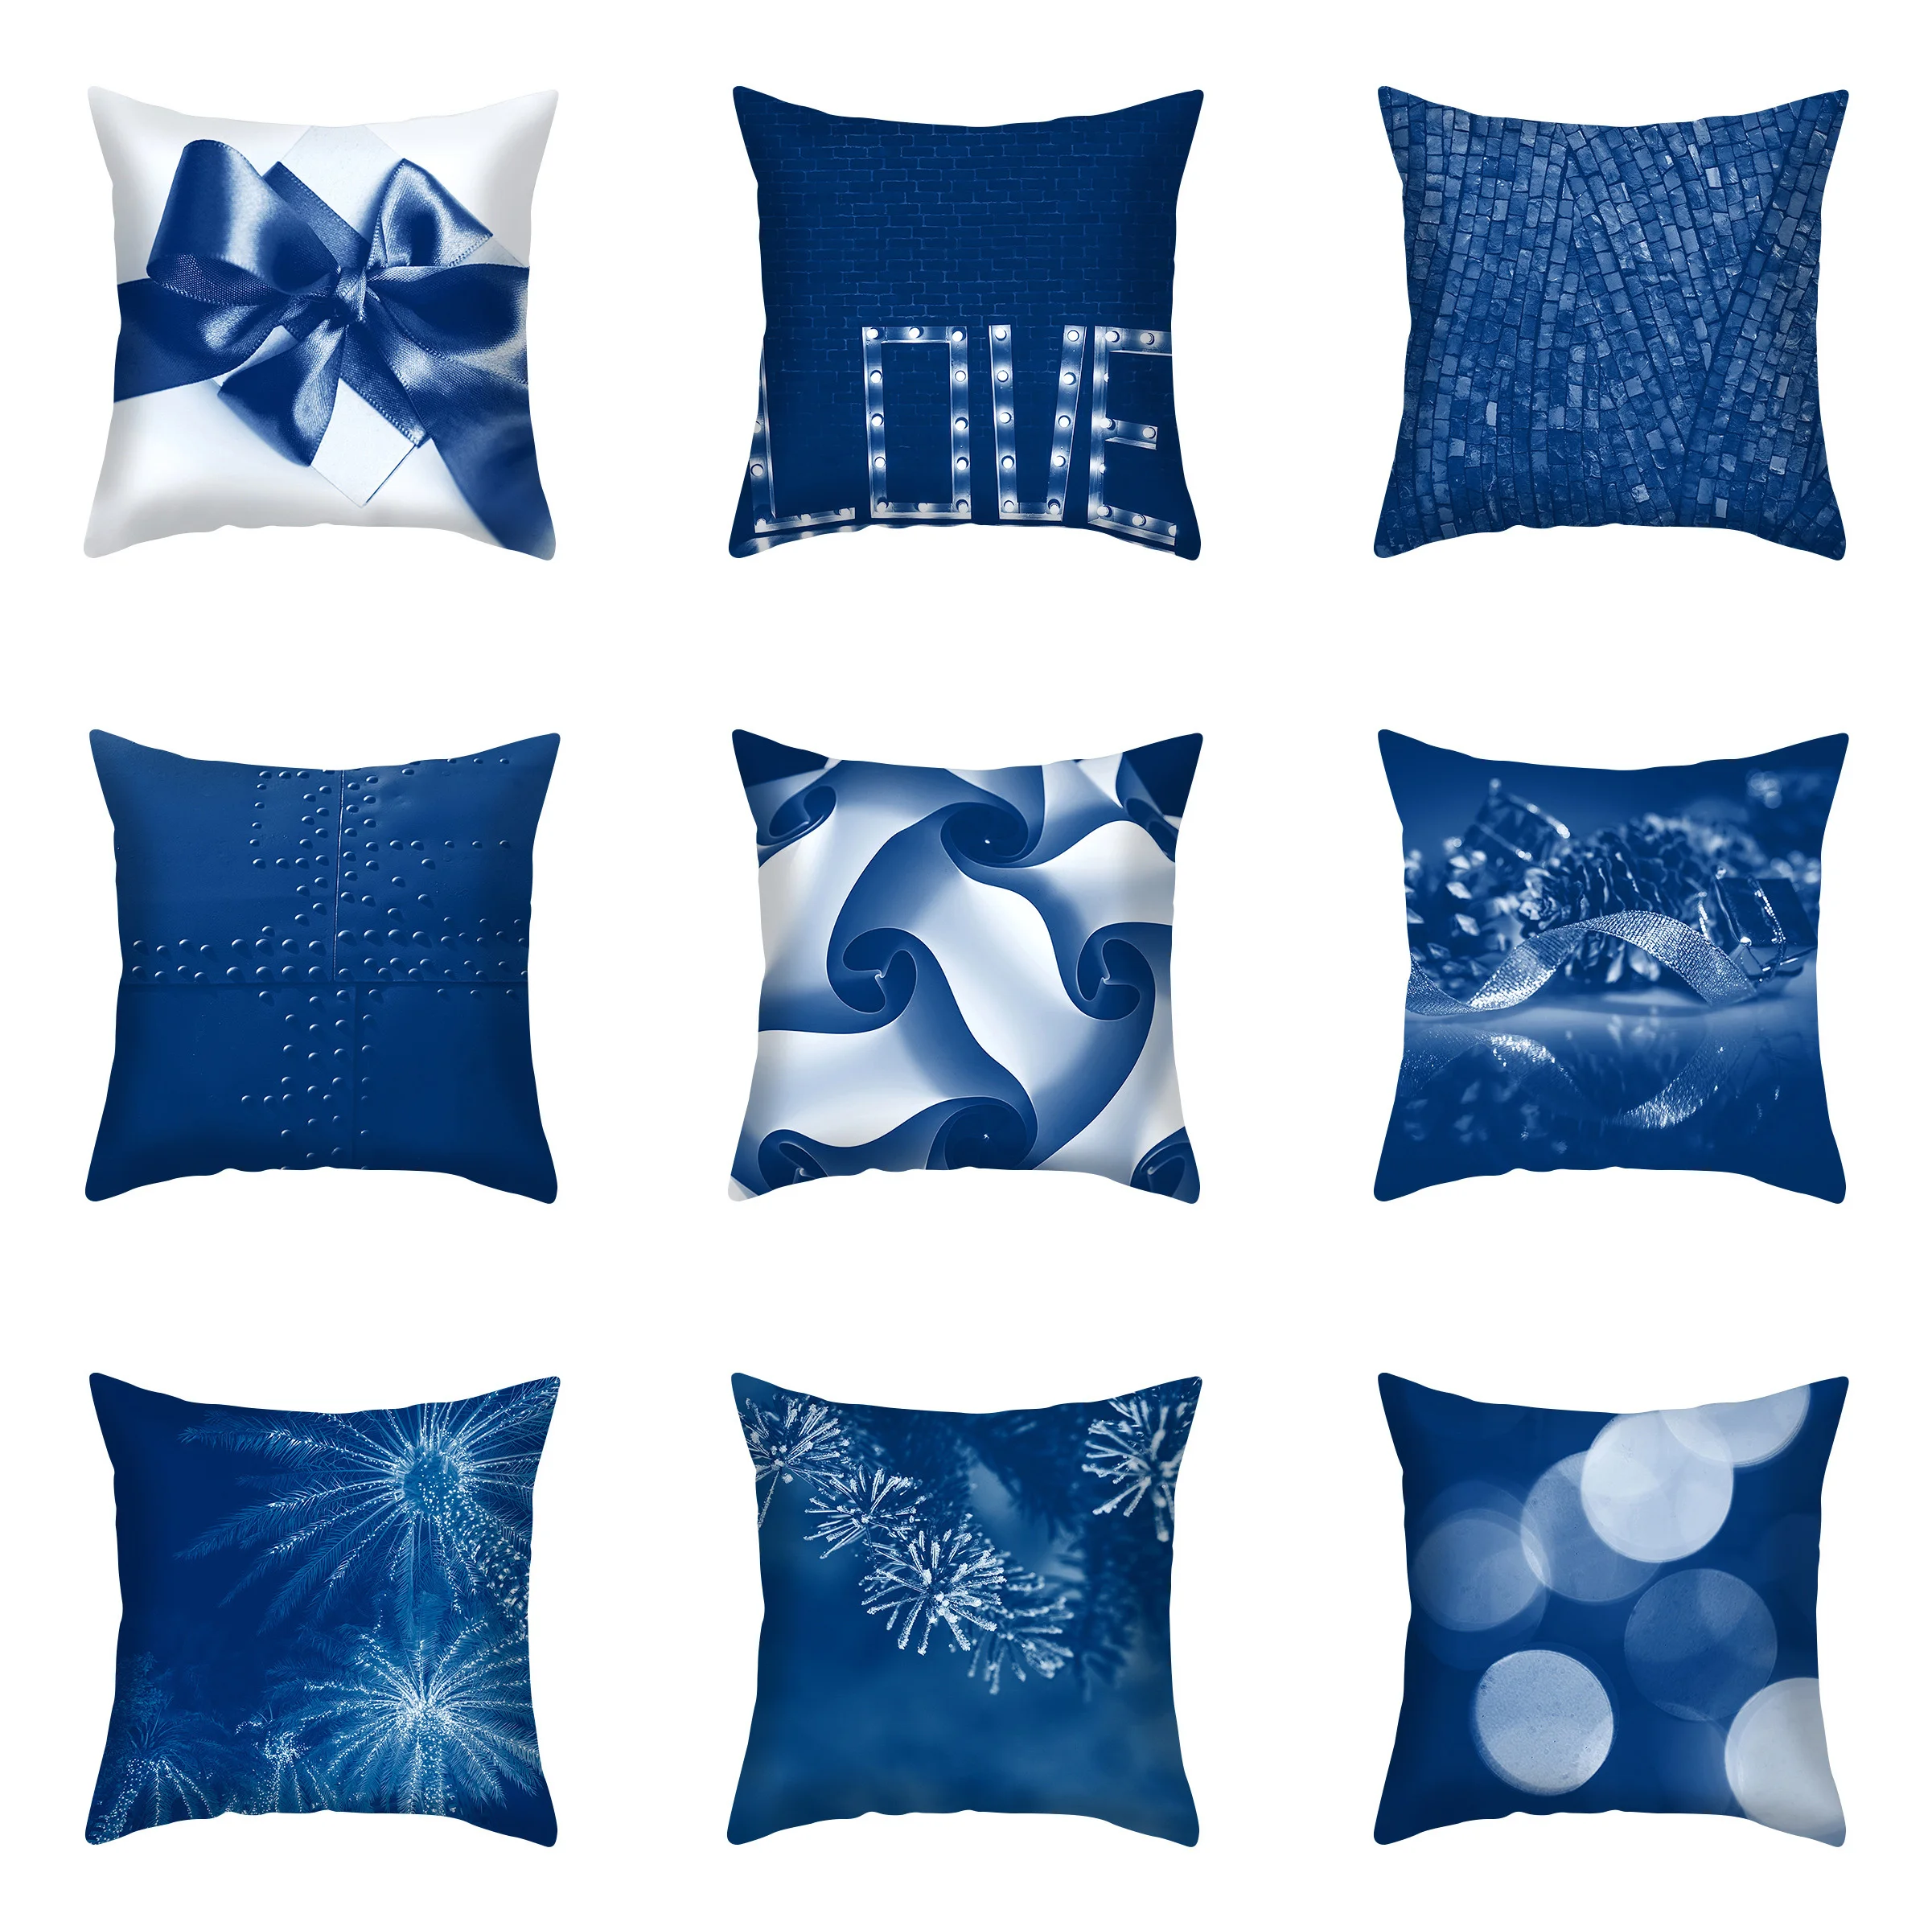 

45x45 см простая синяя серия с абстрактным изображением, декоративная наволочка для диванной подушки, популярная наволочка для диванной поду...